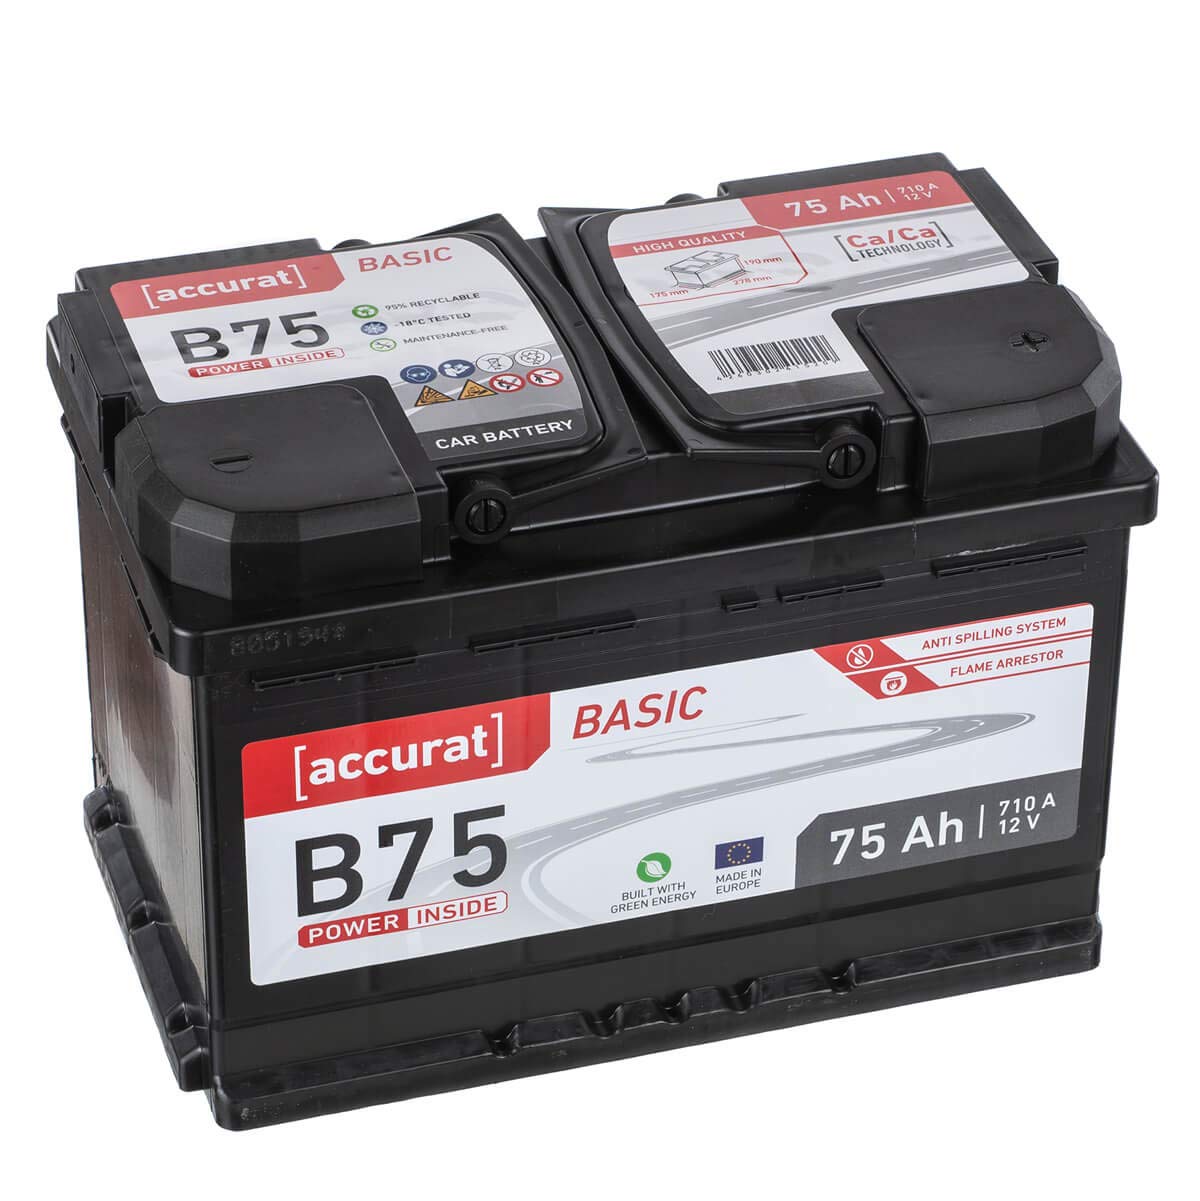 Accurat Basic B75 Autobatterie - 12V, 75Ah, 710A, zyklenfest, wartungsfrei, 30% mehr Startleistung, Ca-Technologie, Pluspol rechts- Starterbatterie, Nassbatterie, Blei-Säure Batterie von Accurat